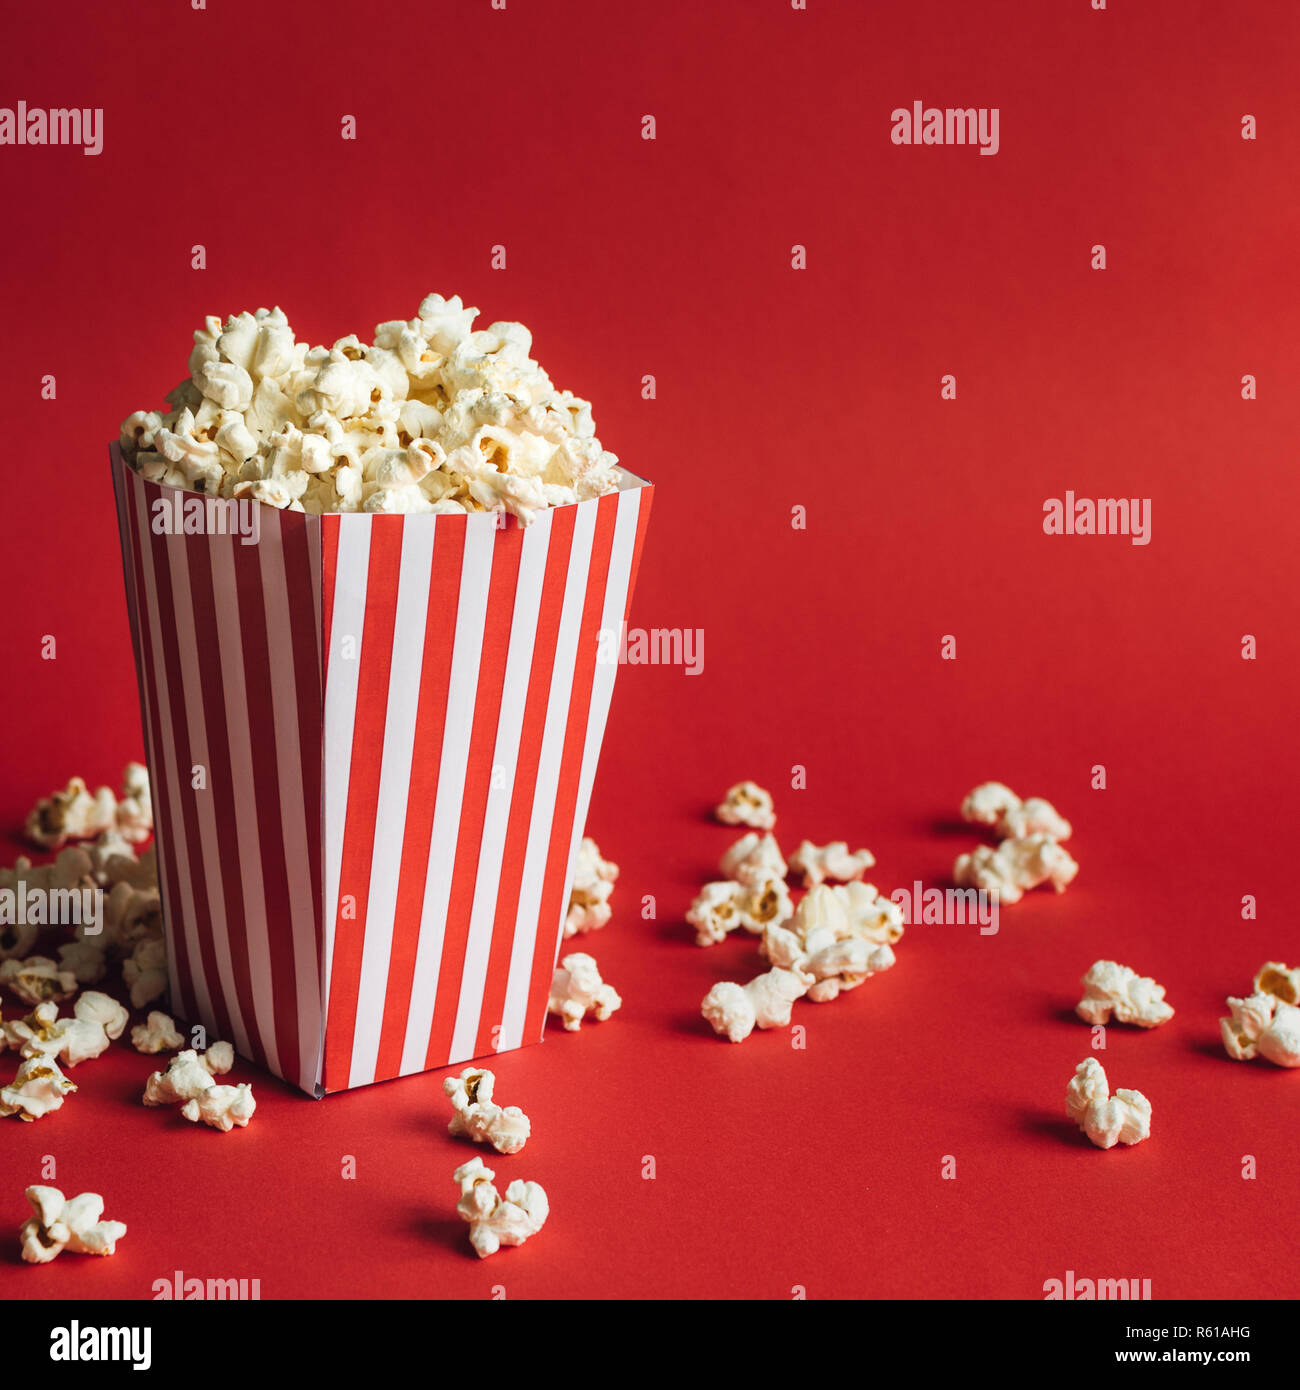 Scatola a strisce con popcorn su sfondo rosso. Formato quadrato Foto Stock